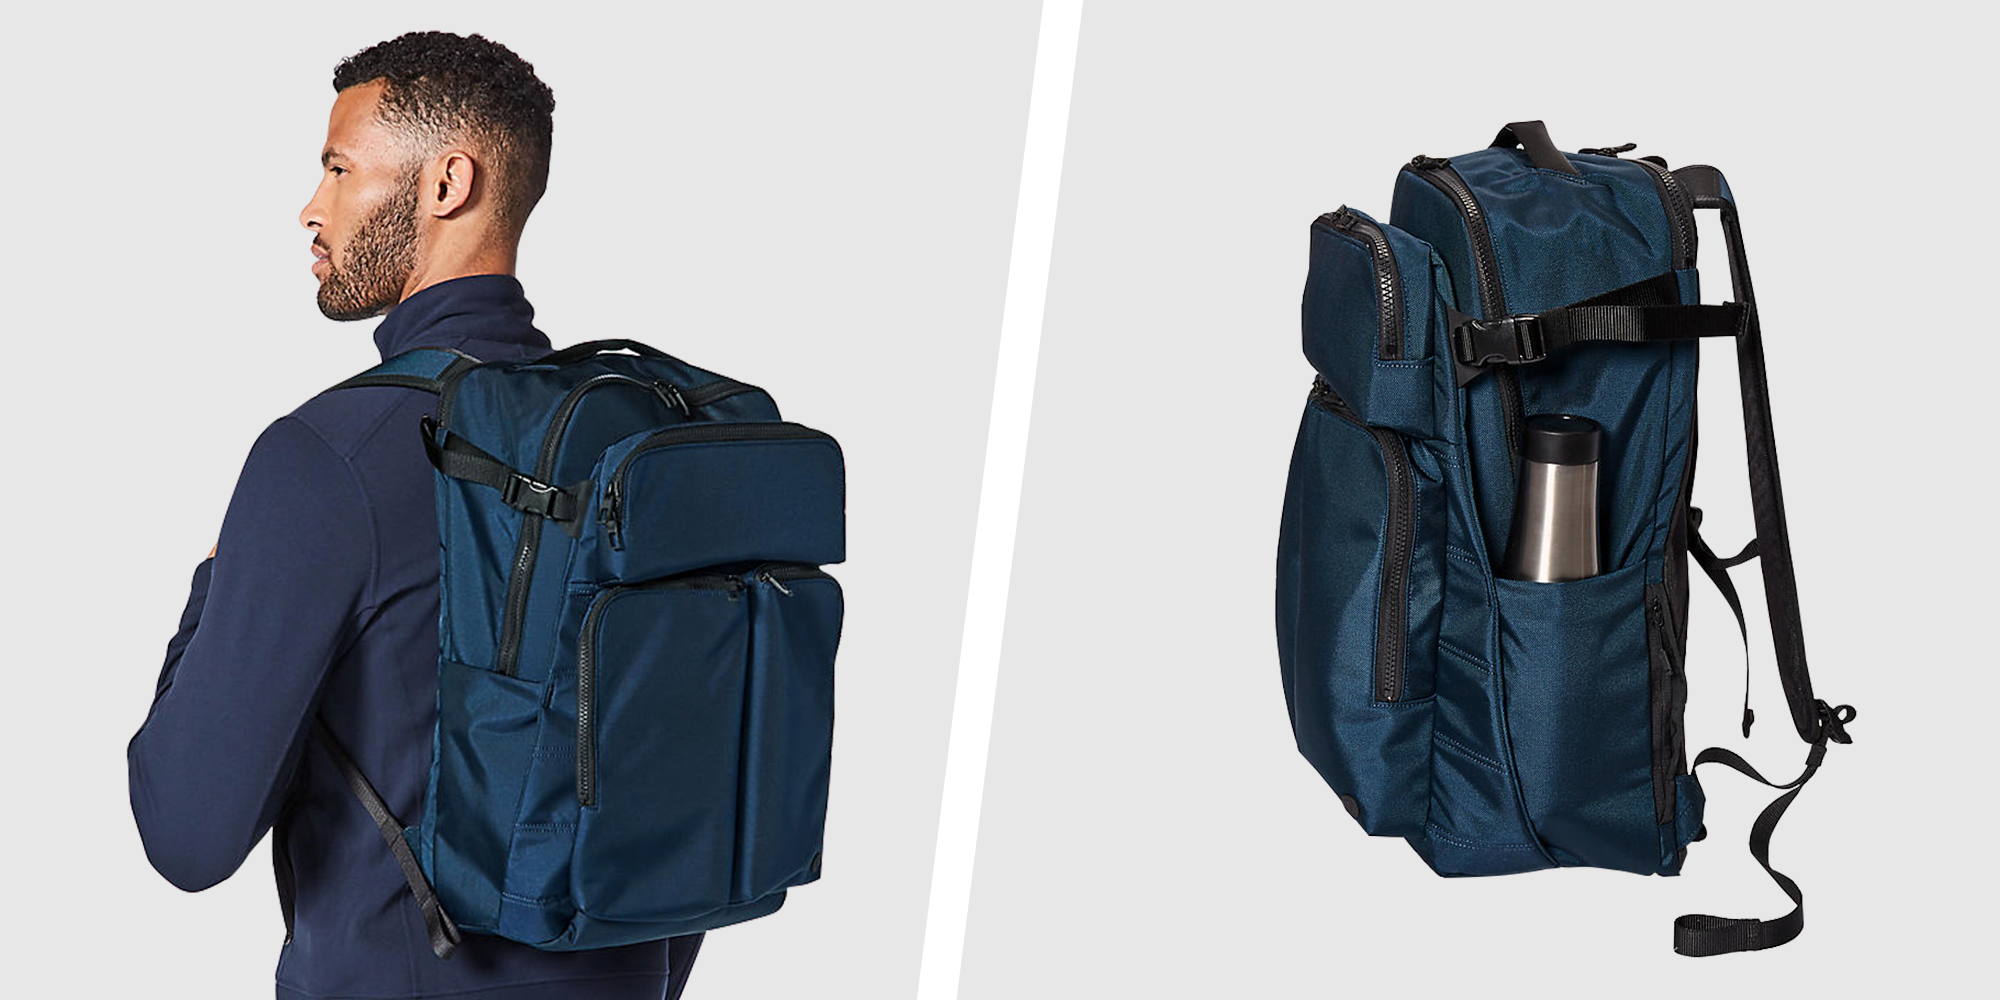 65L Travel Duffel Bag with Shoulder Strap Offer - LivingSocial